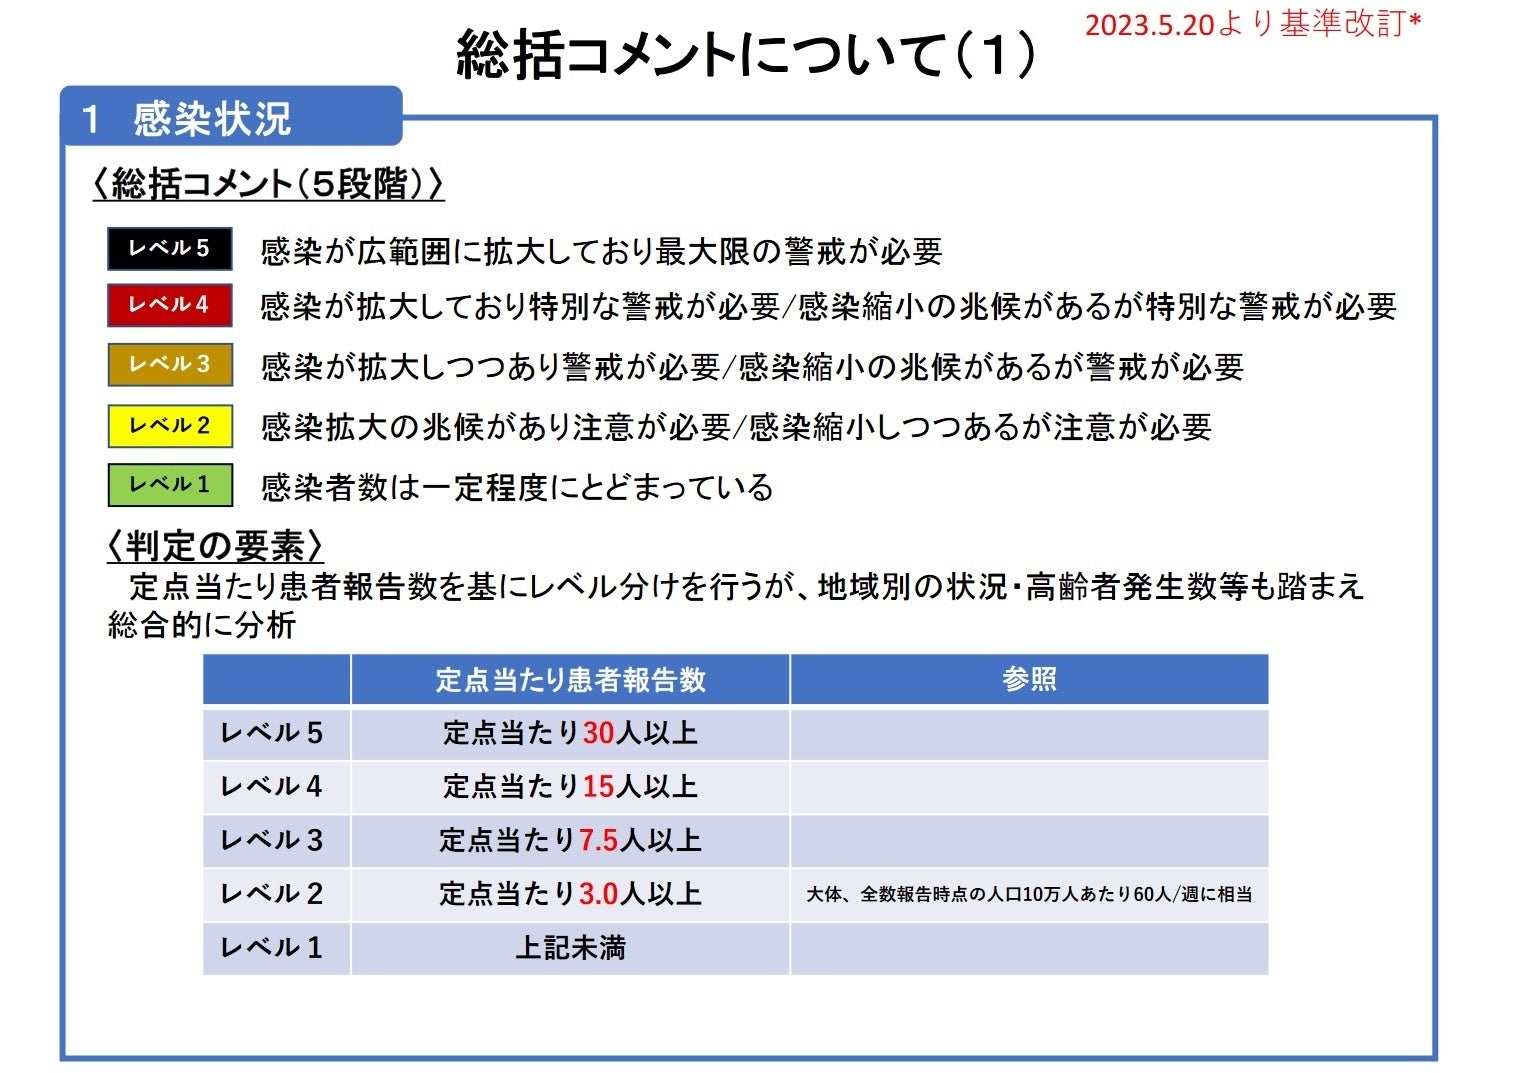 【岡山大学】岡山県内の感染状況・医療提供体制の分析について（2023年9月29日現在）